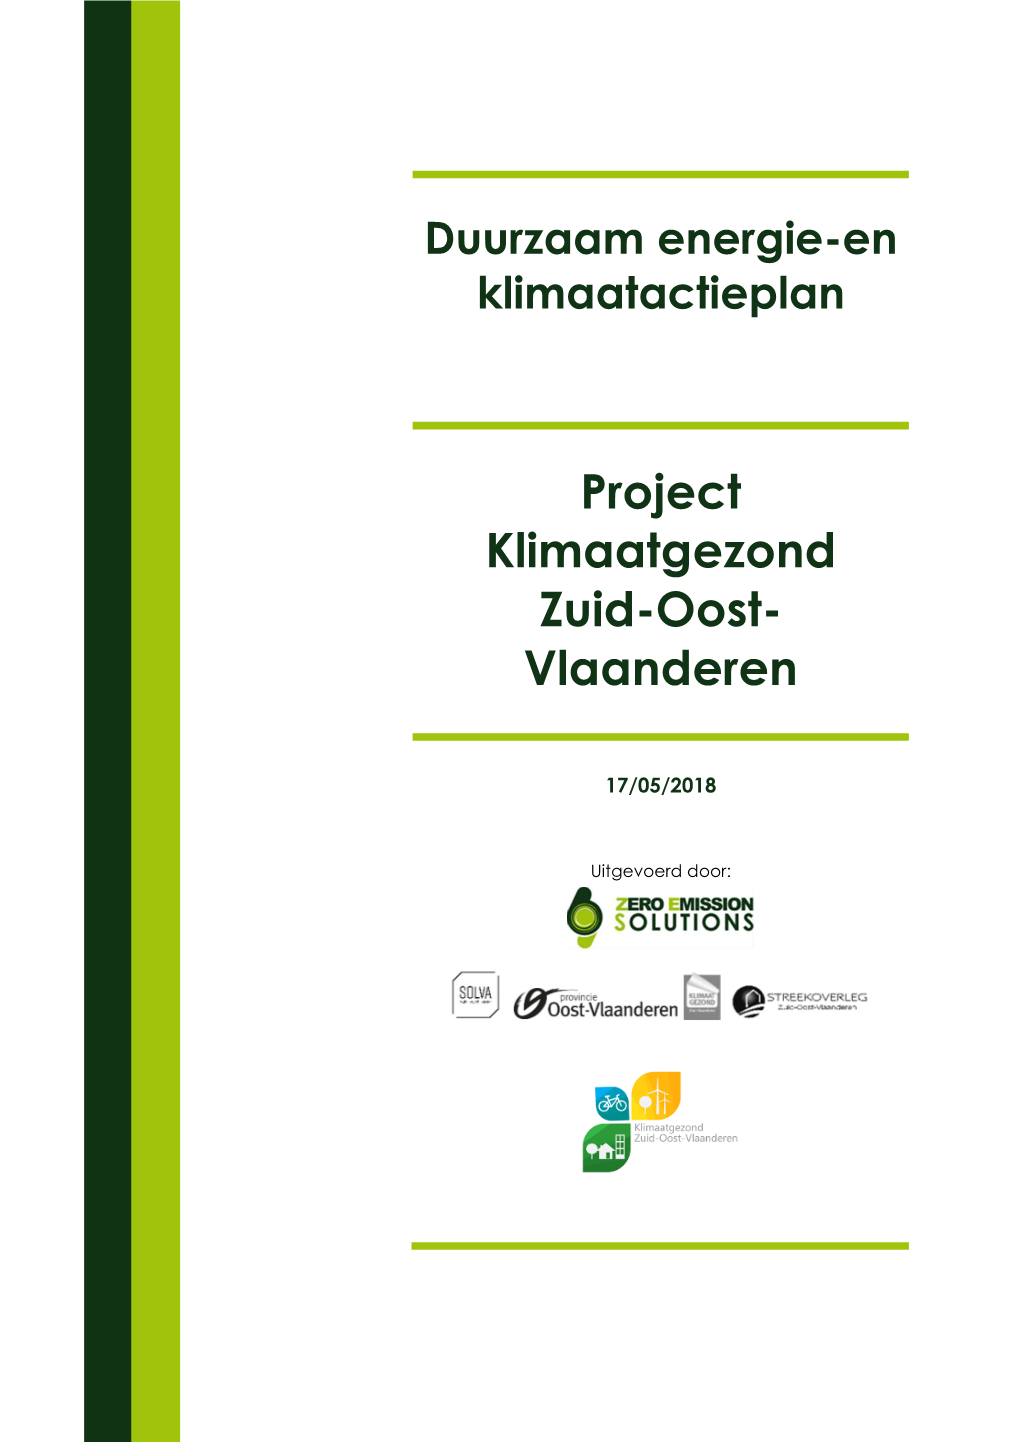 Project Klimaatgezond Zuid-Oost- Vlaanderen